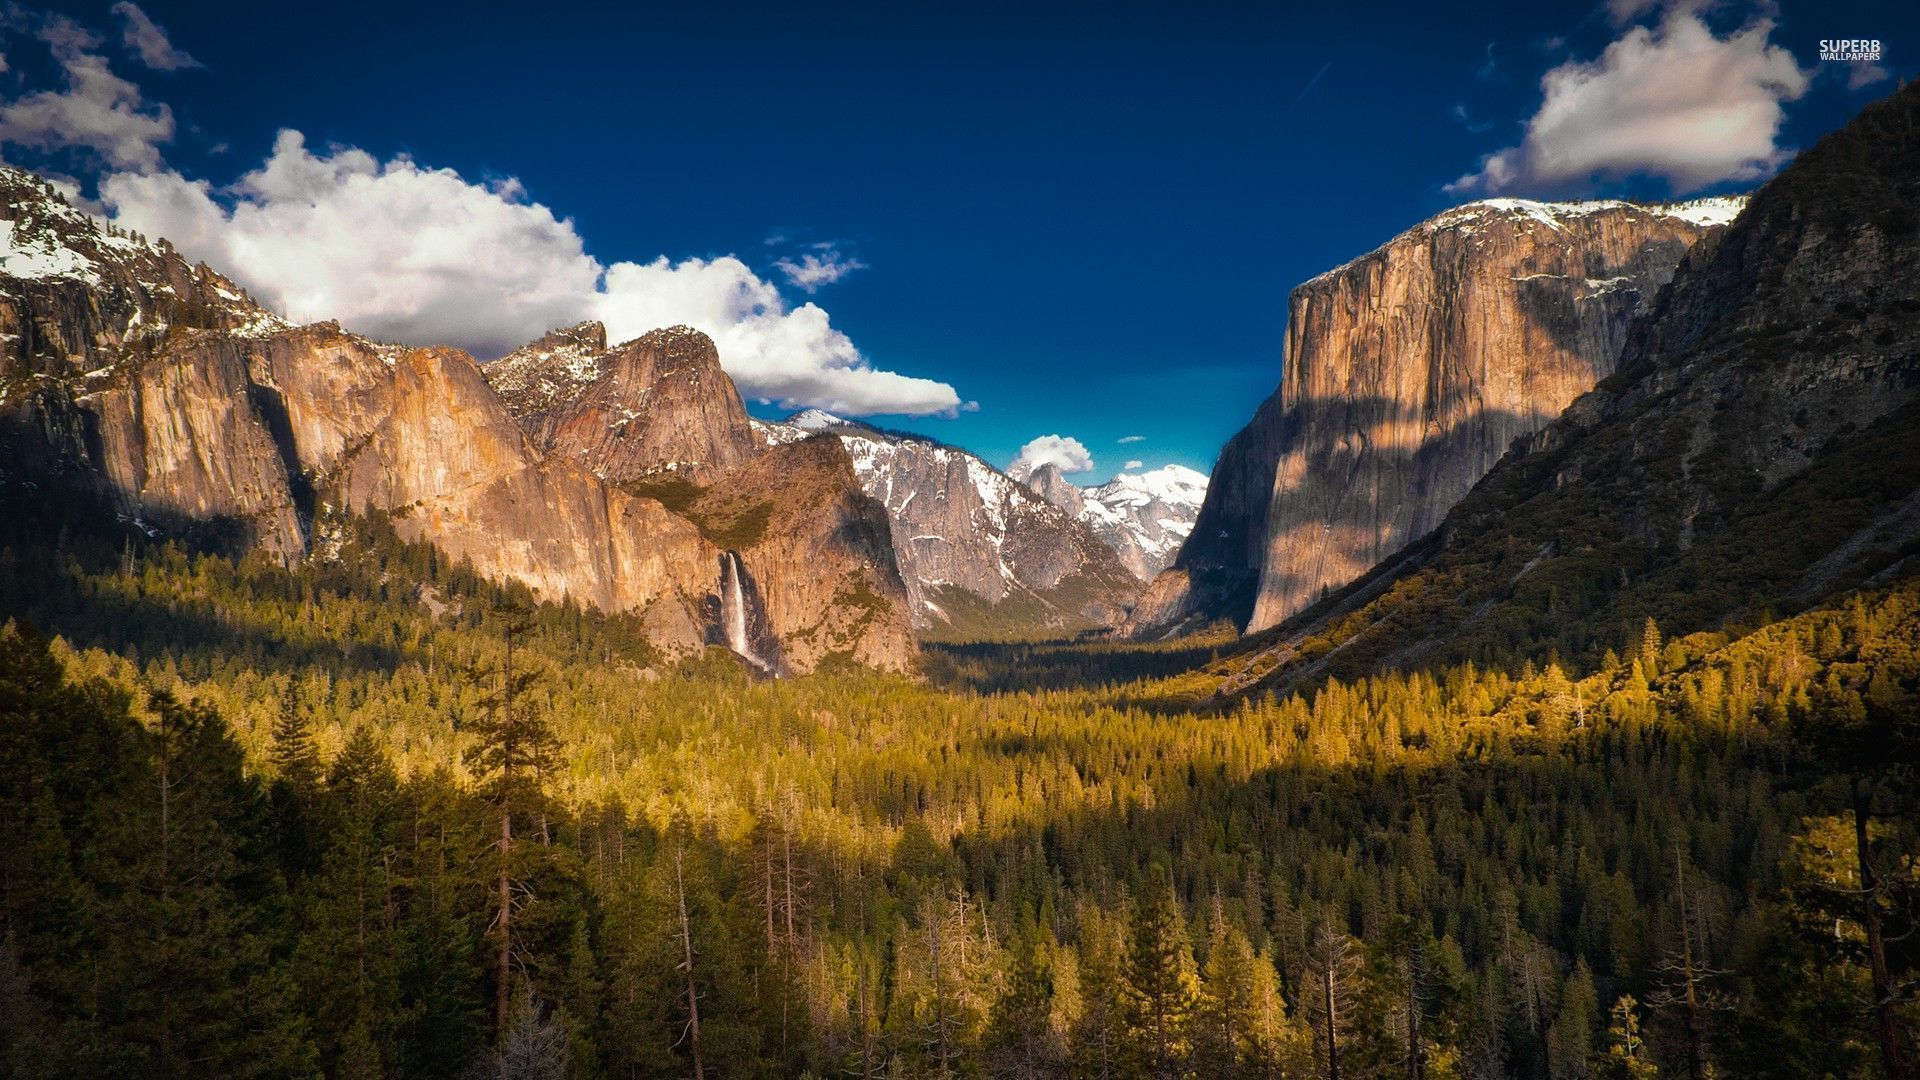 Yosemite National Park wallpaper - Nature wallpapers - #28661